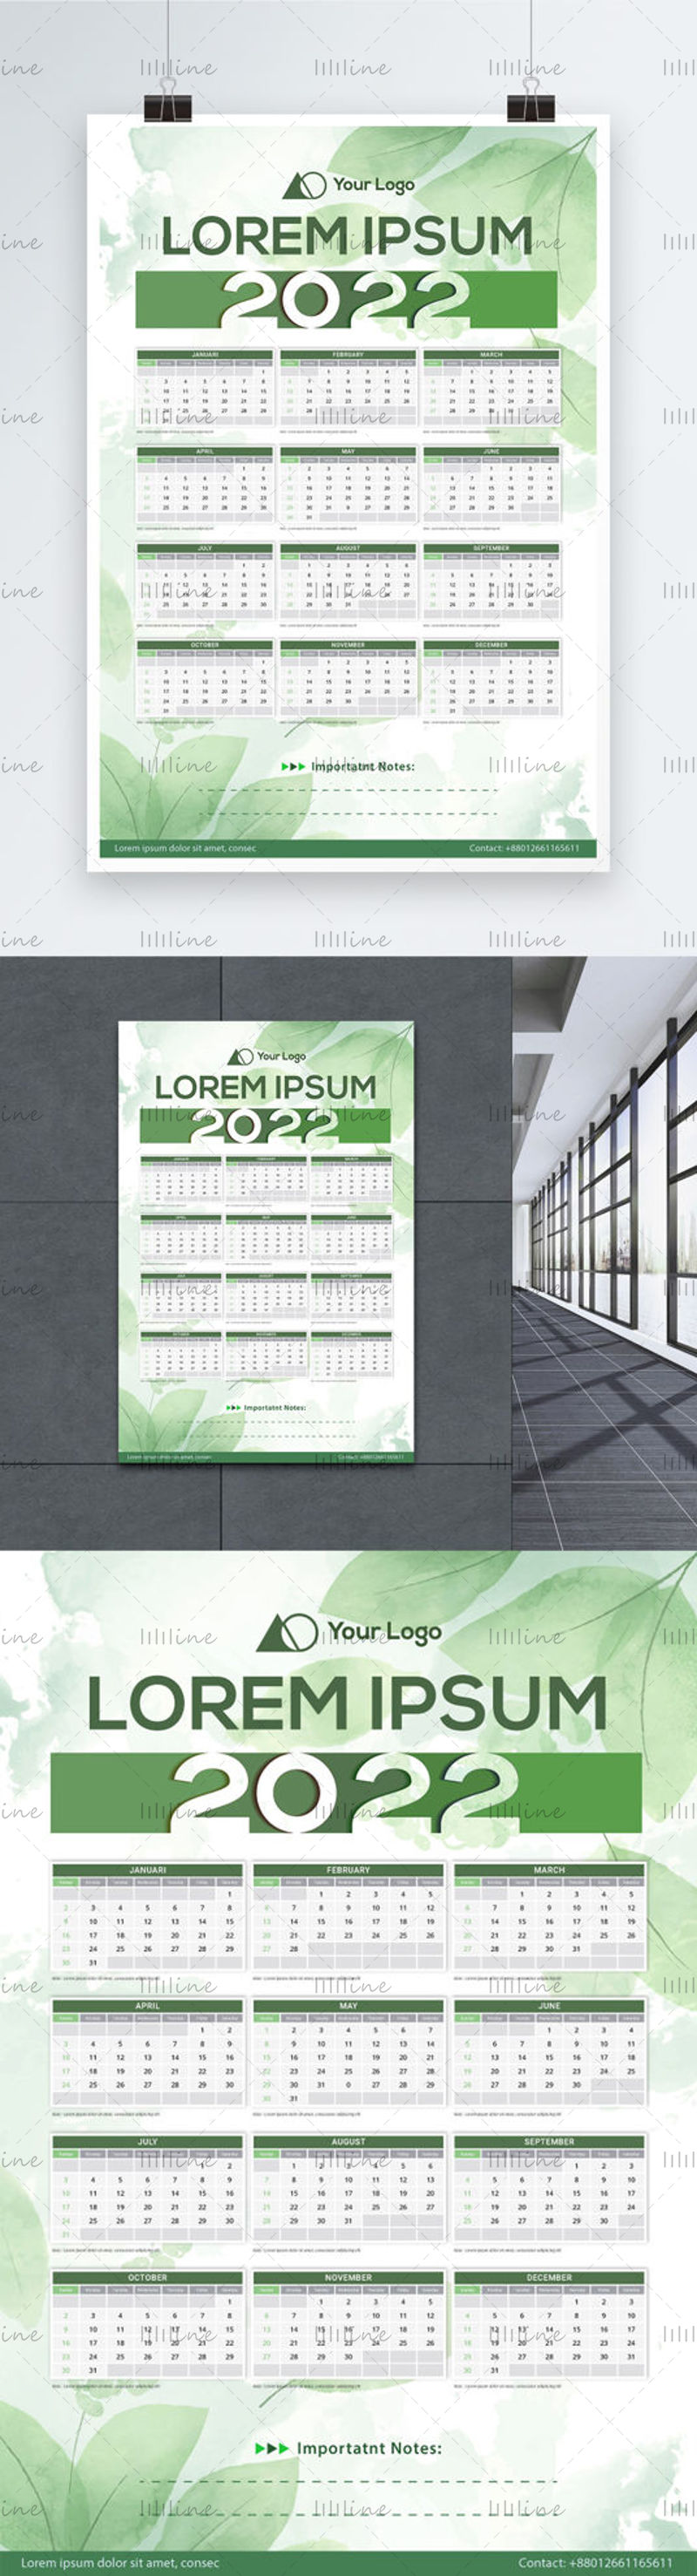 Modello di banner per calendario a tema foglia verde 2022